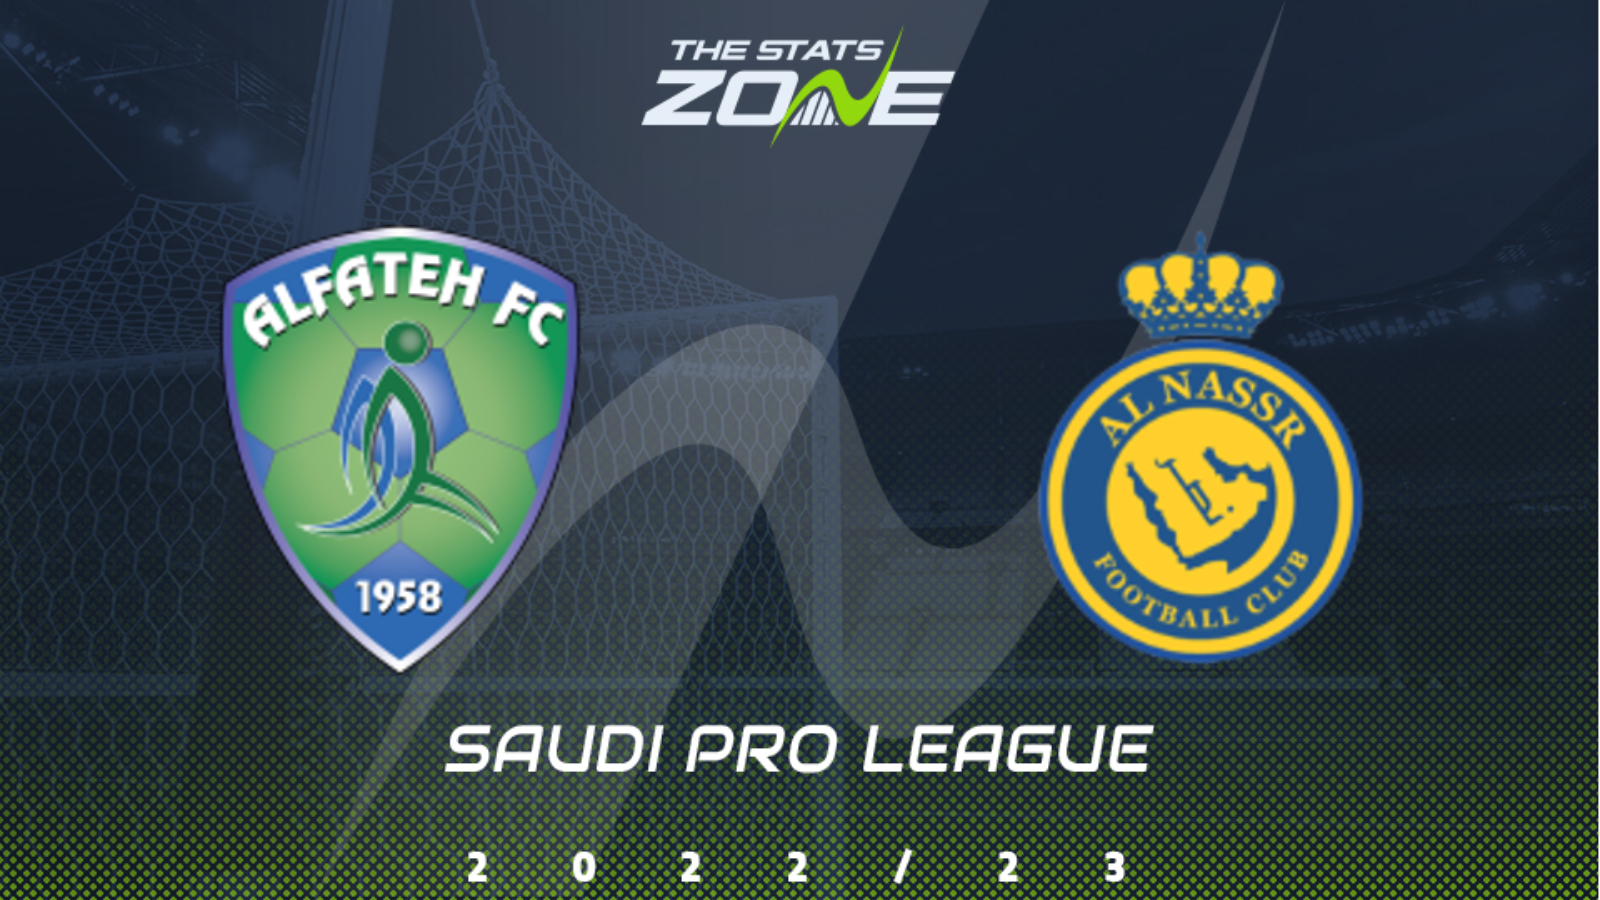 Saudi pro league. Al Fateh SC logo.